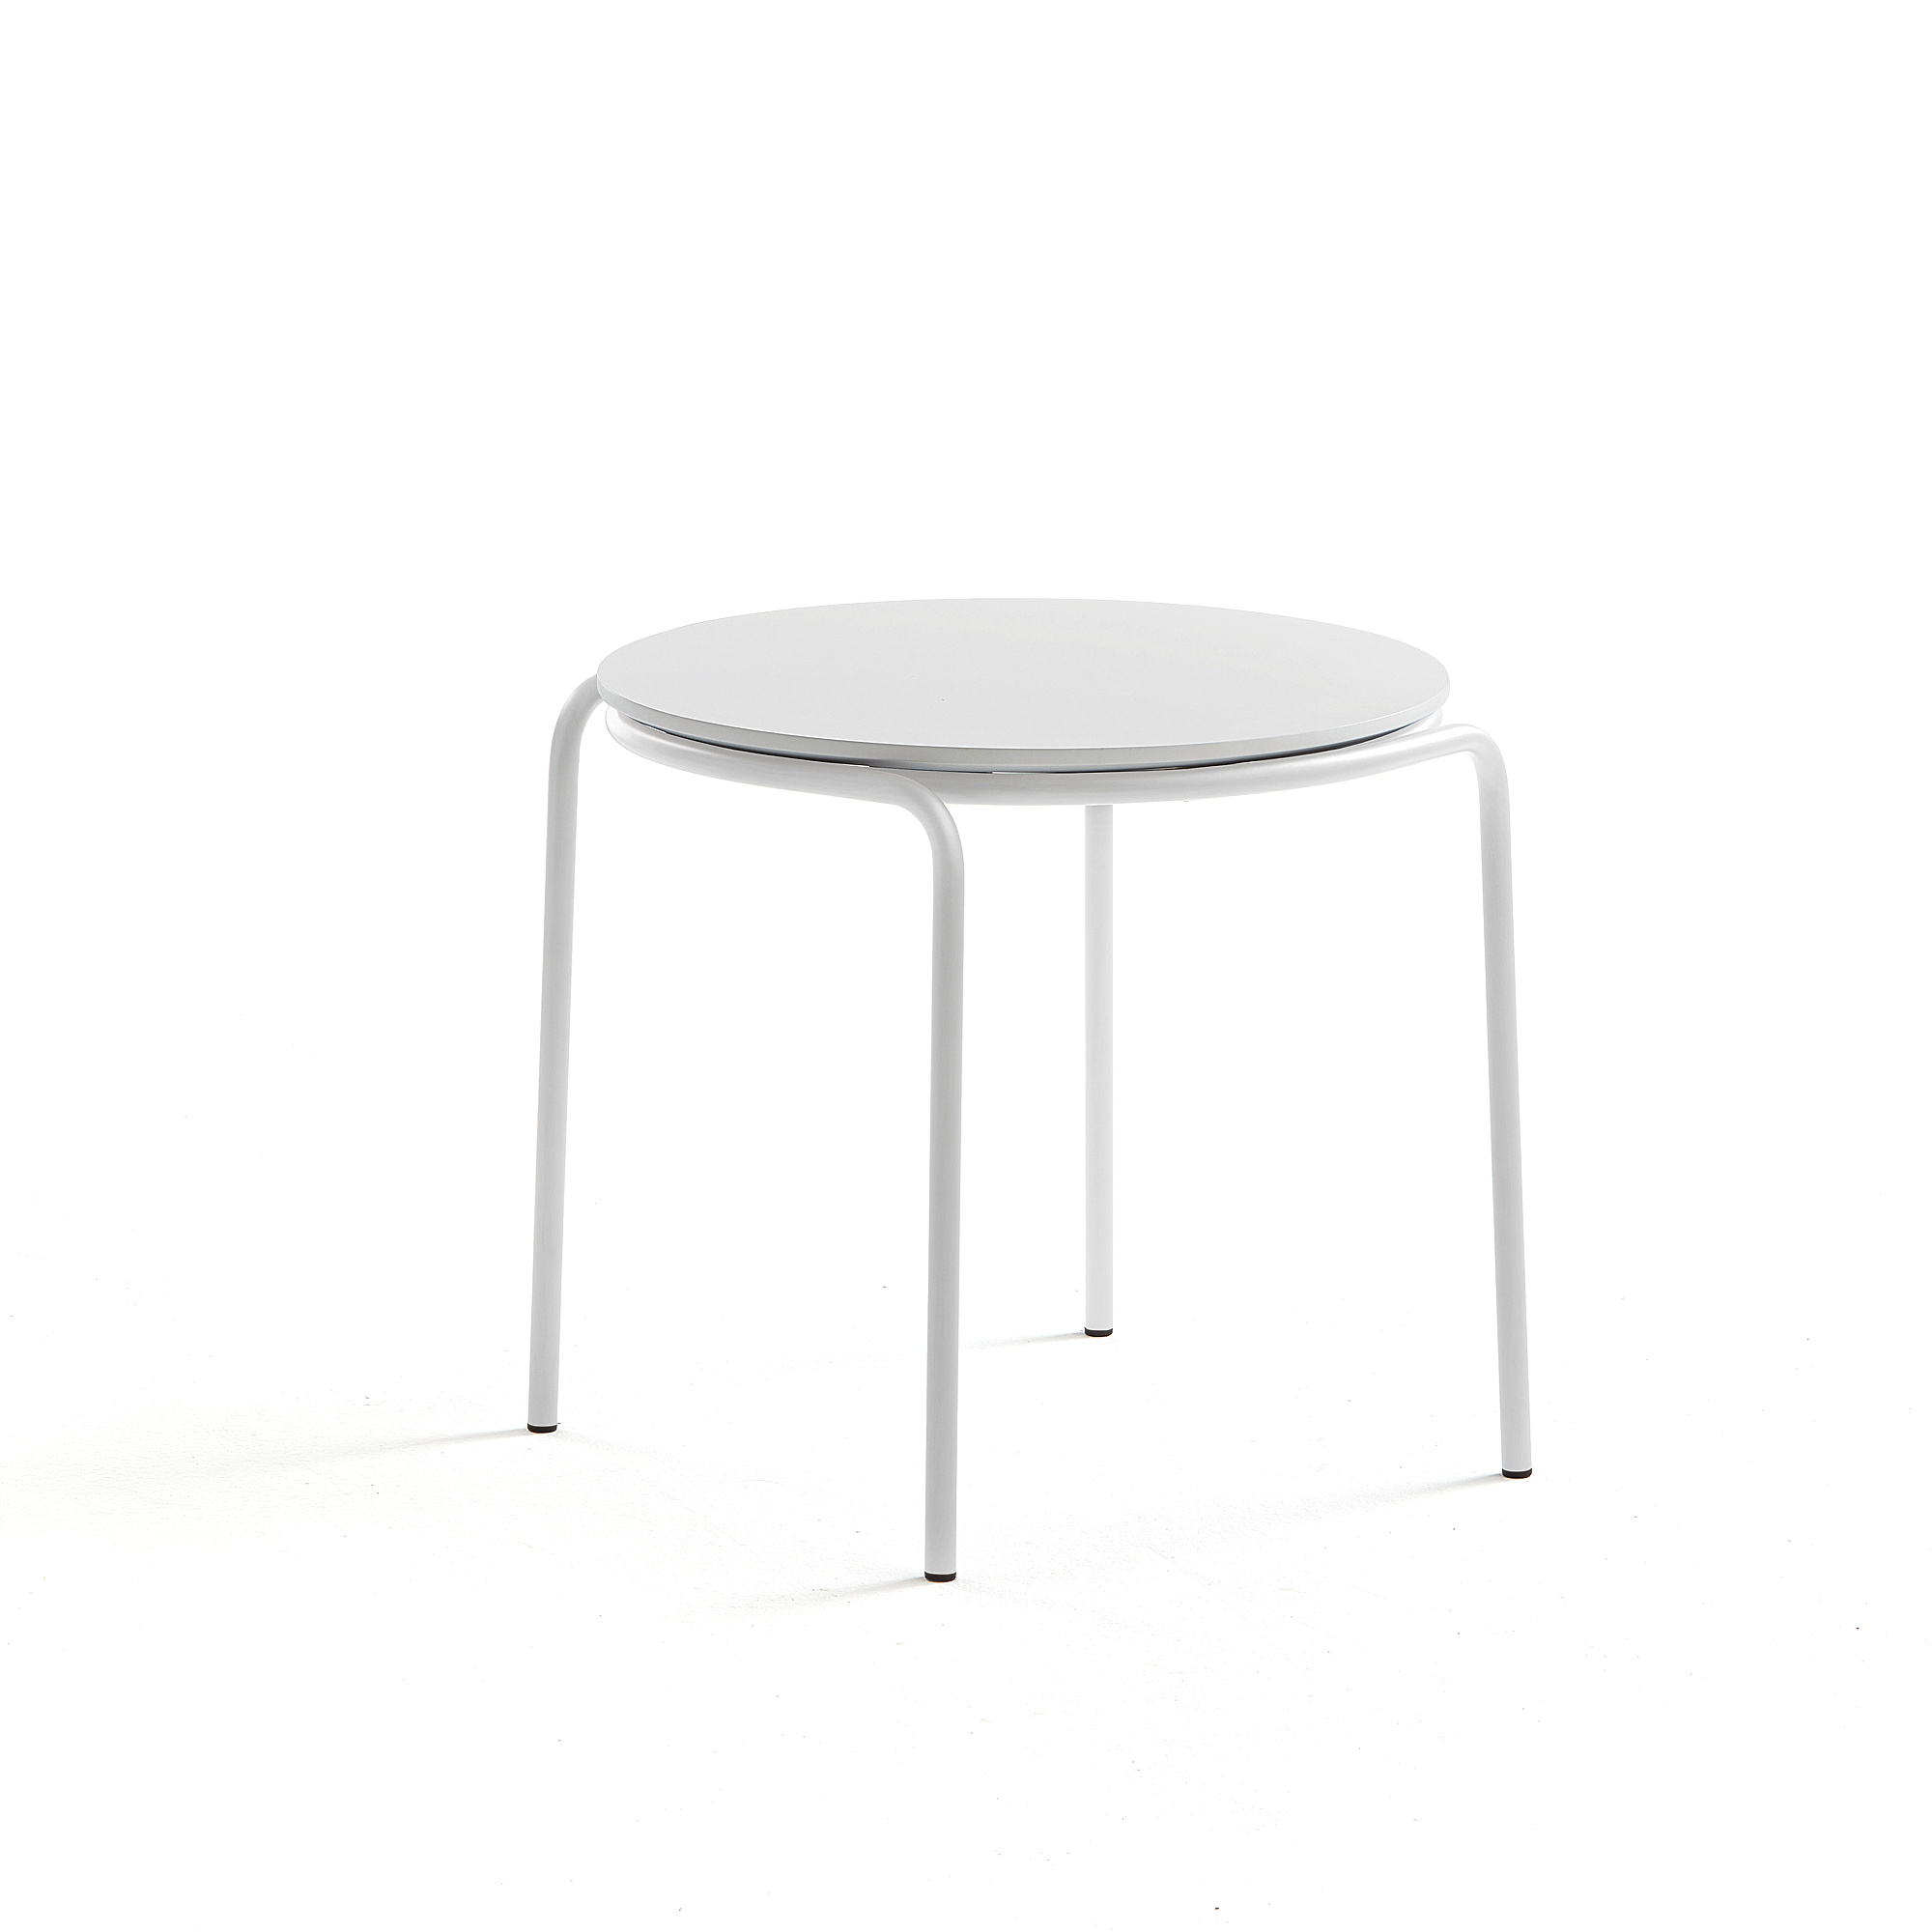 Konferenční stolek Ashley, Ø570 mm, výška 470 mm, bílá, bílá deska